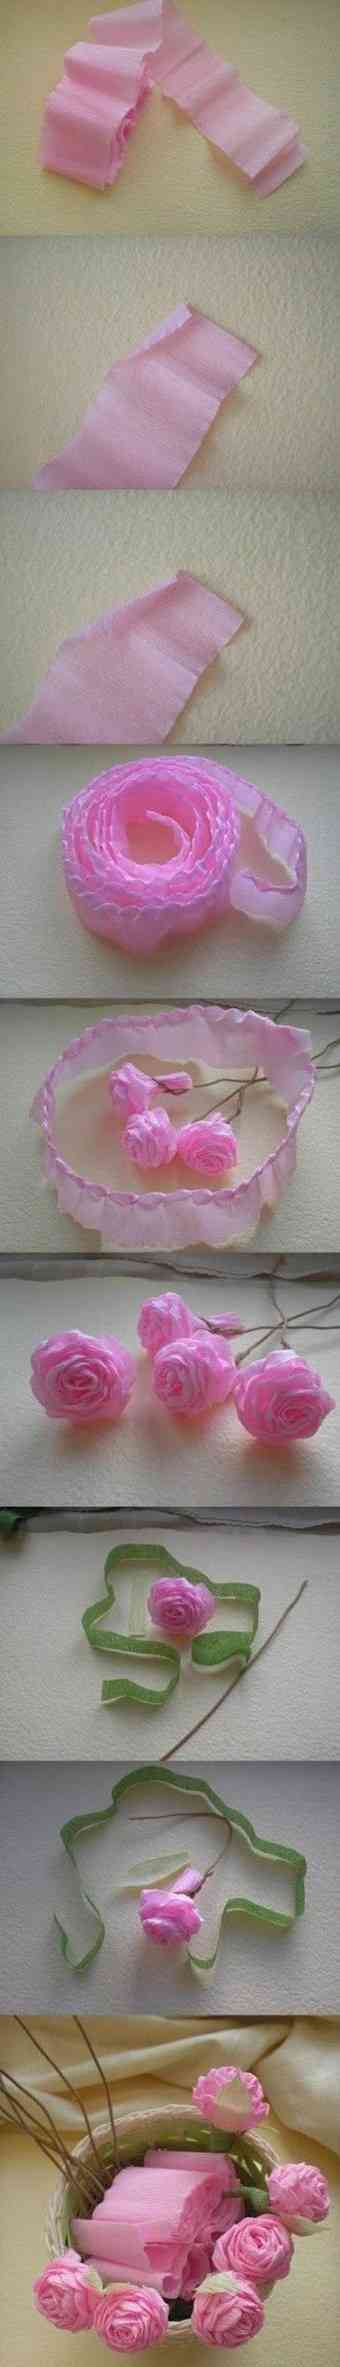 rosas de papel crepe